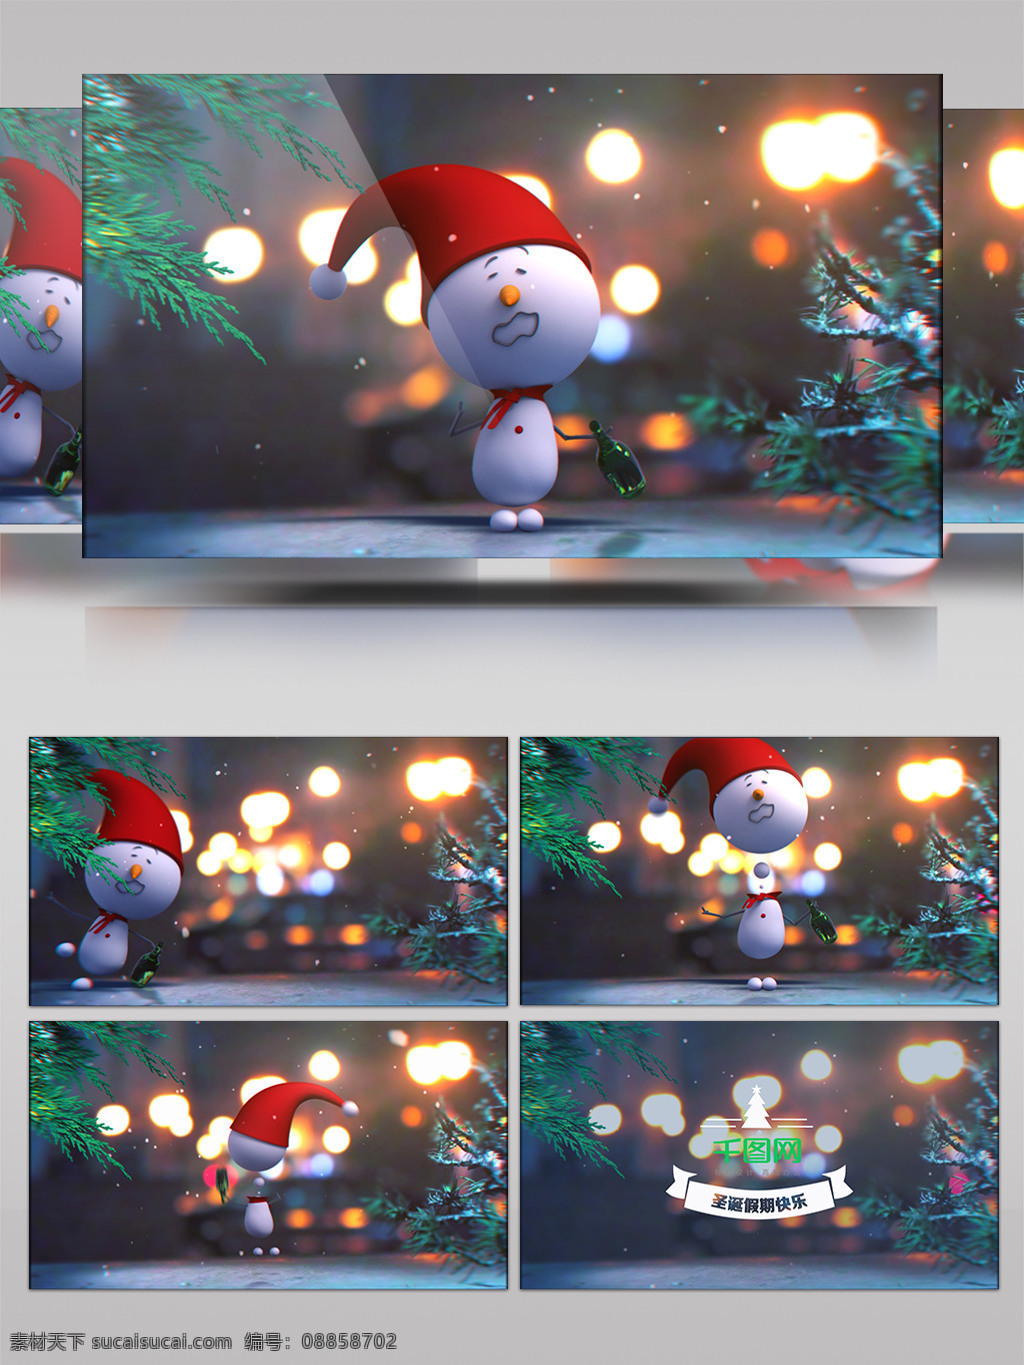 可爱 圣诞 雪人 庆祝 假期 片头 ae 模版 圣诞节 圣诞树 搞笑 3d卡通 祝福 趣味 俏皮 含音效